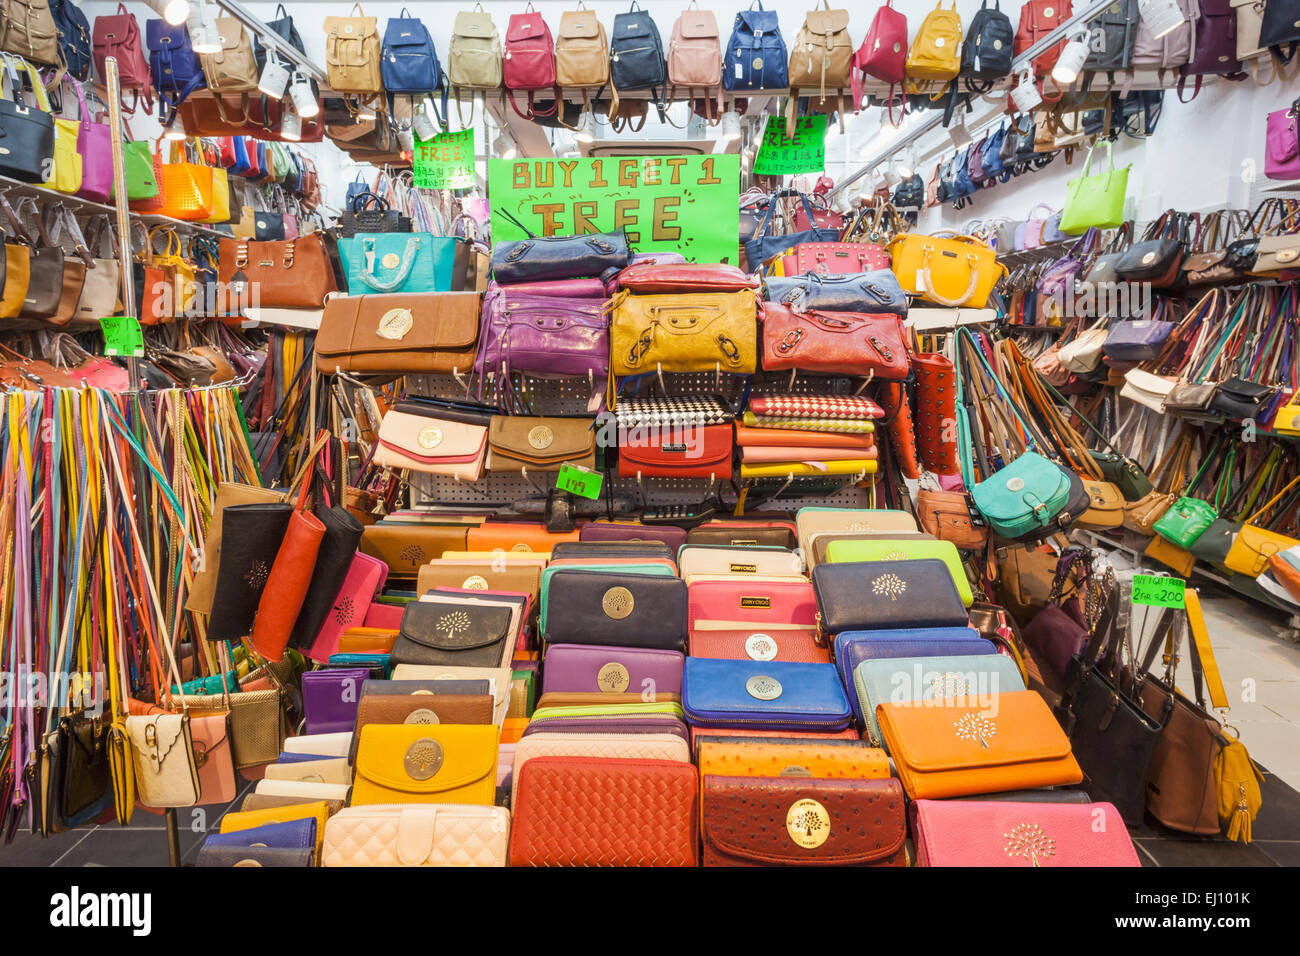 China, Hong Kong, Stanley Market, Shop Display of Fake Purses and Handbags Stock Photo